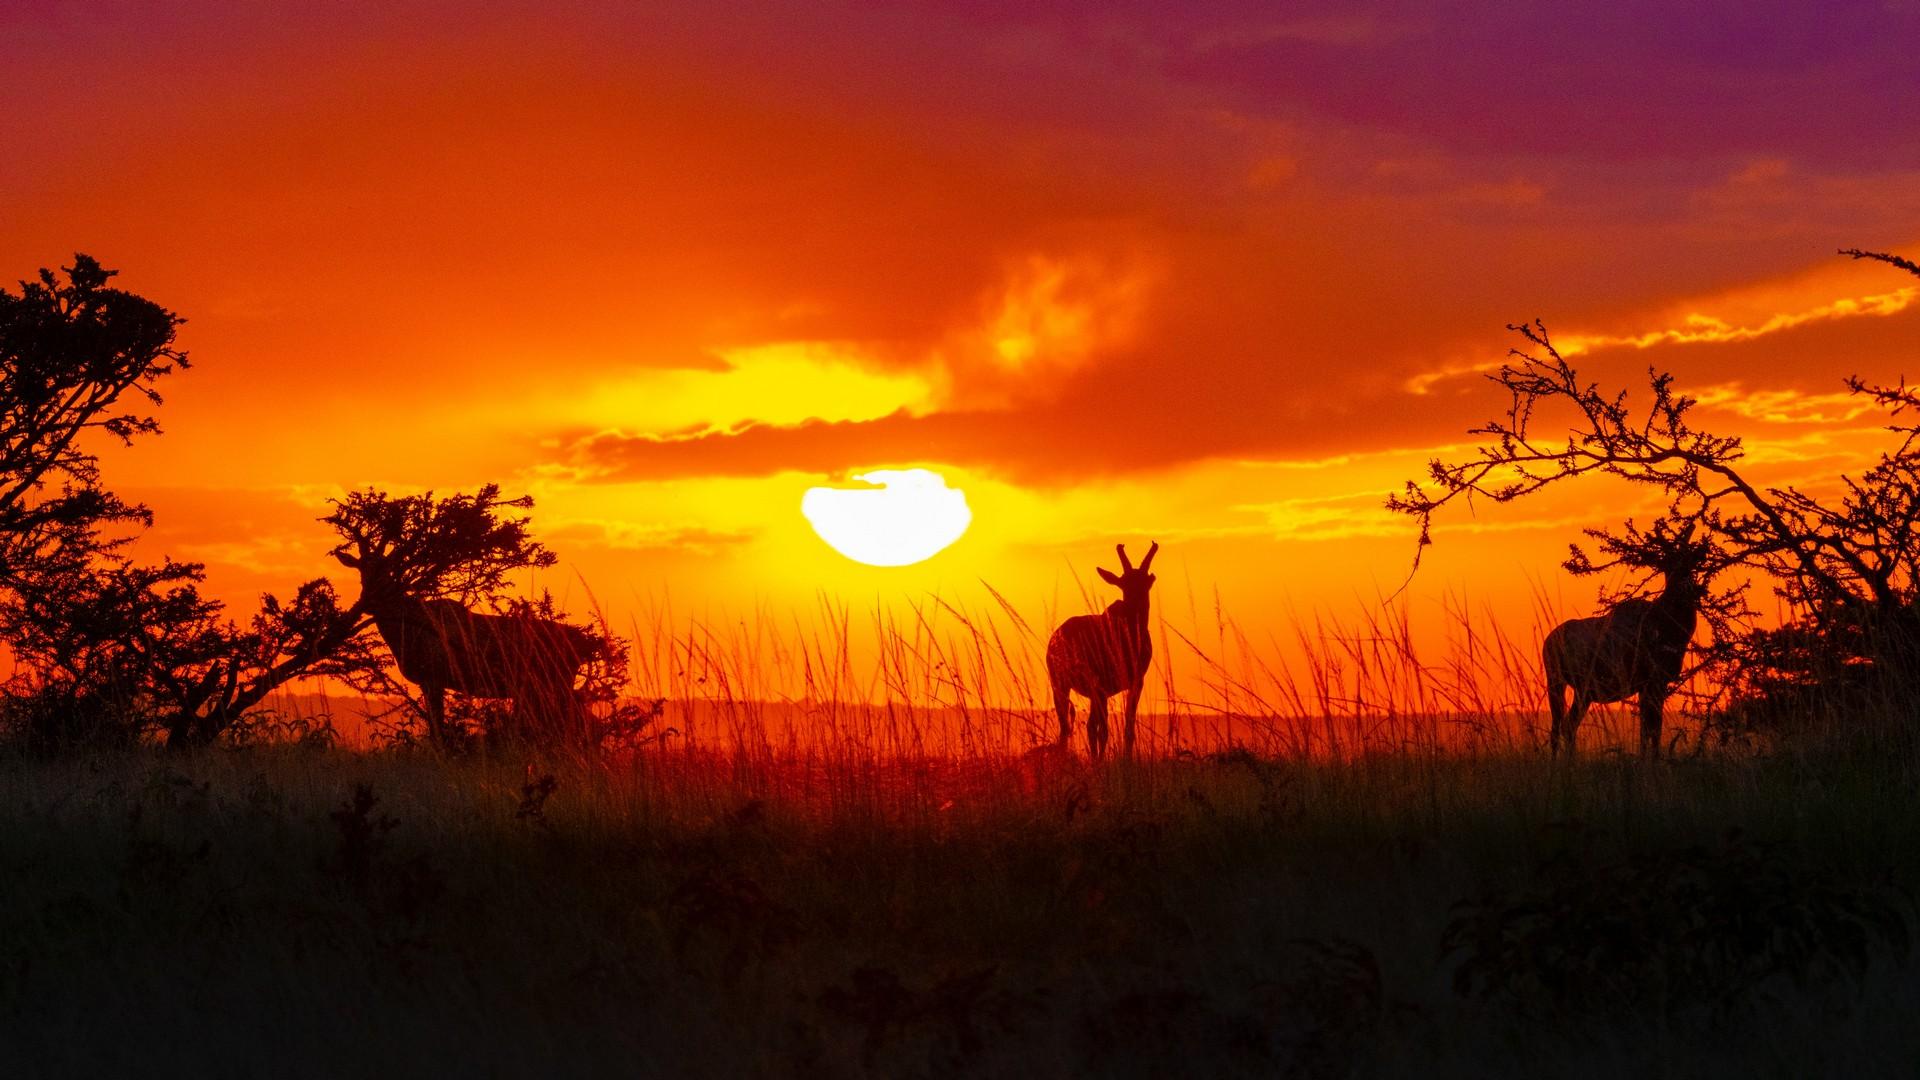 Kenya: the shadow of antelopes at sunset